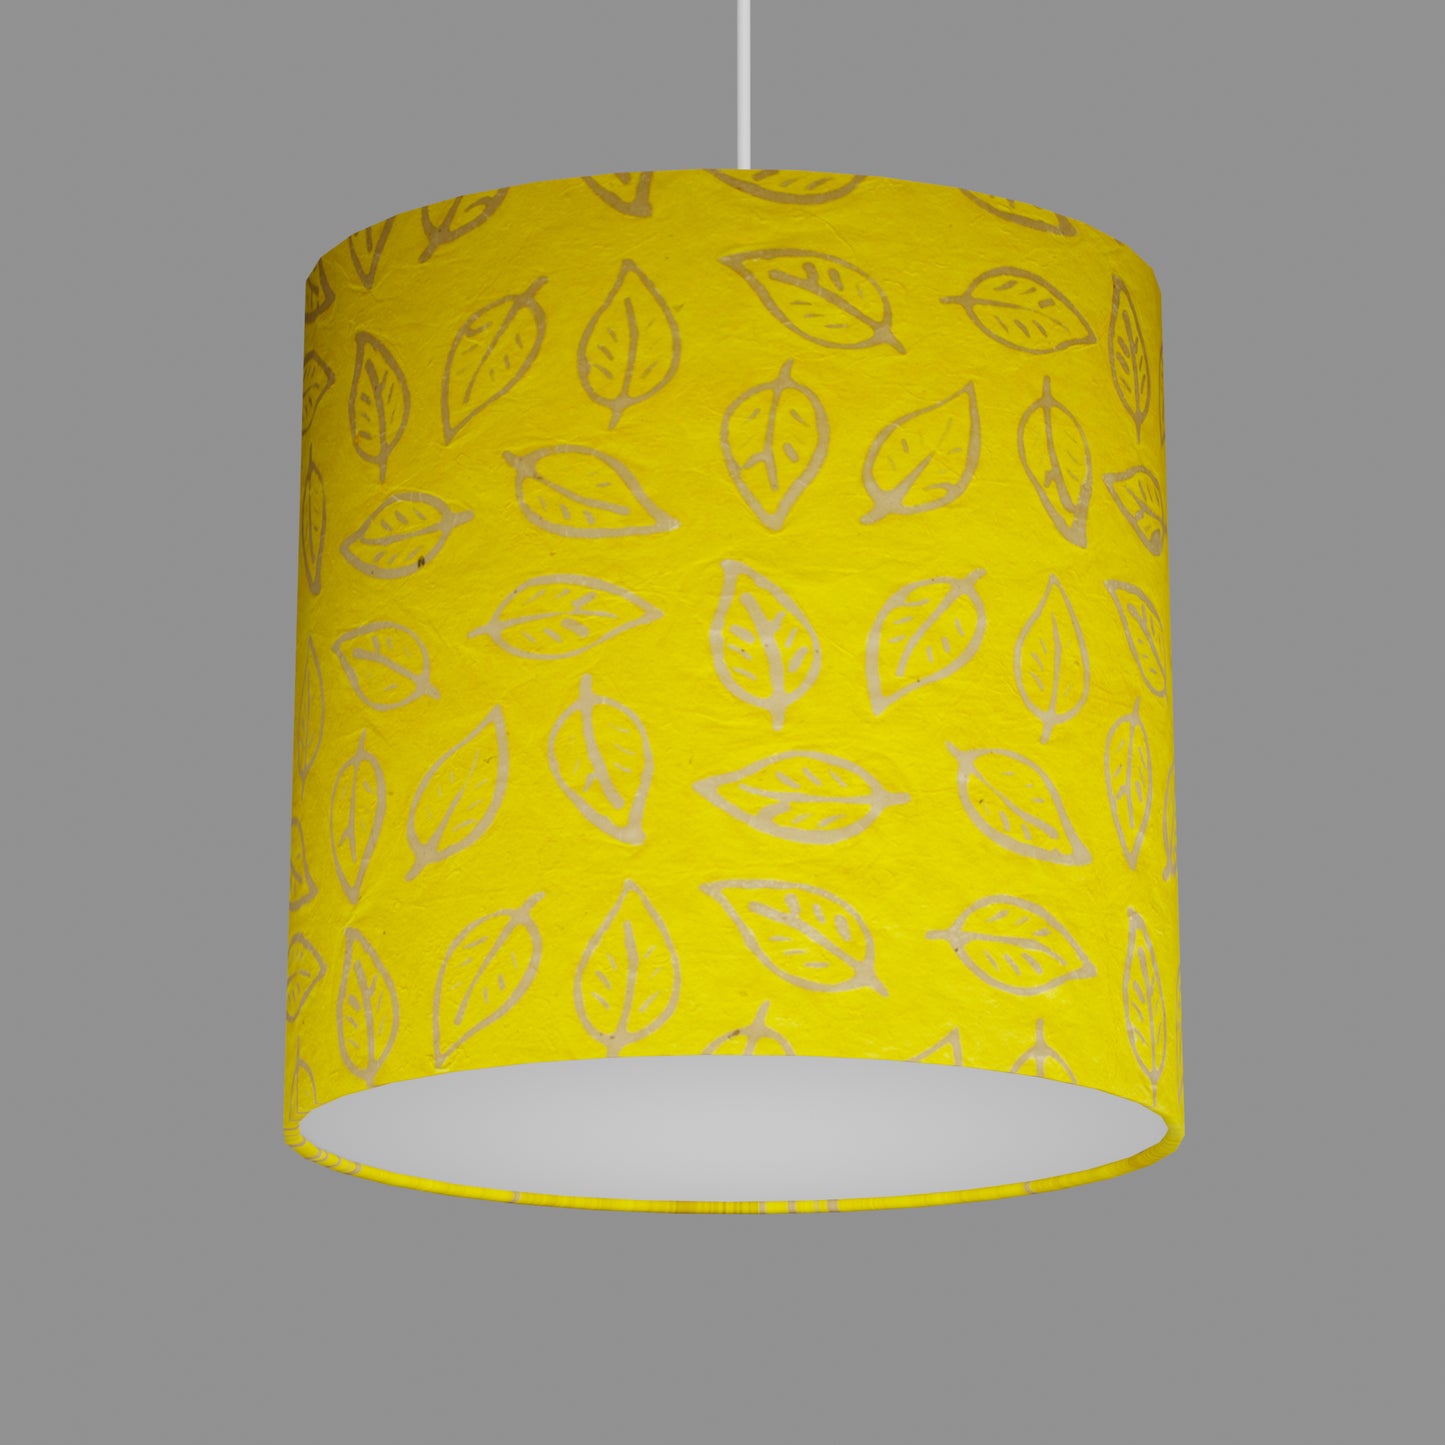 Oval Lamp Shade - B107 ~ Batik Leaf Yellow, 30cm(w) x 30cm(h) x 22cm(d)